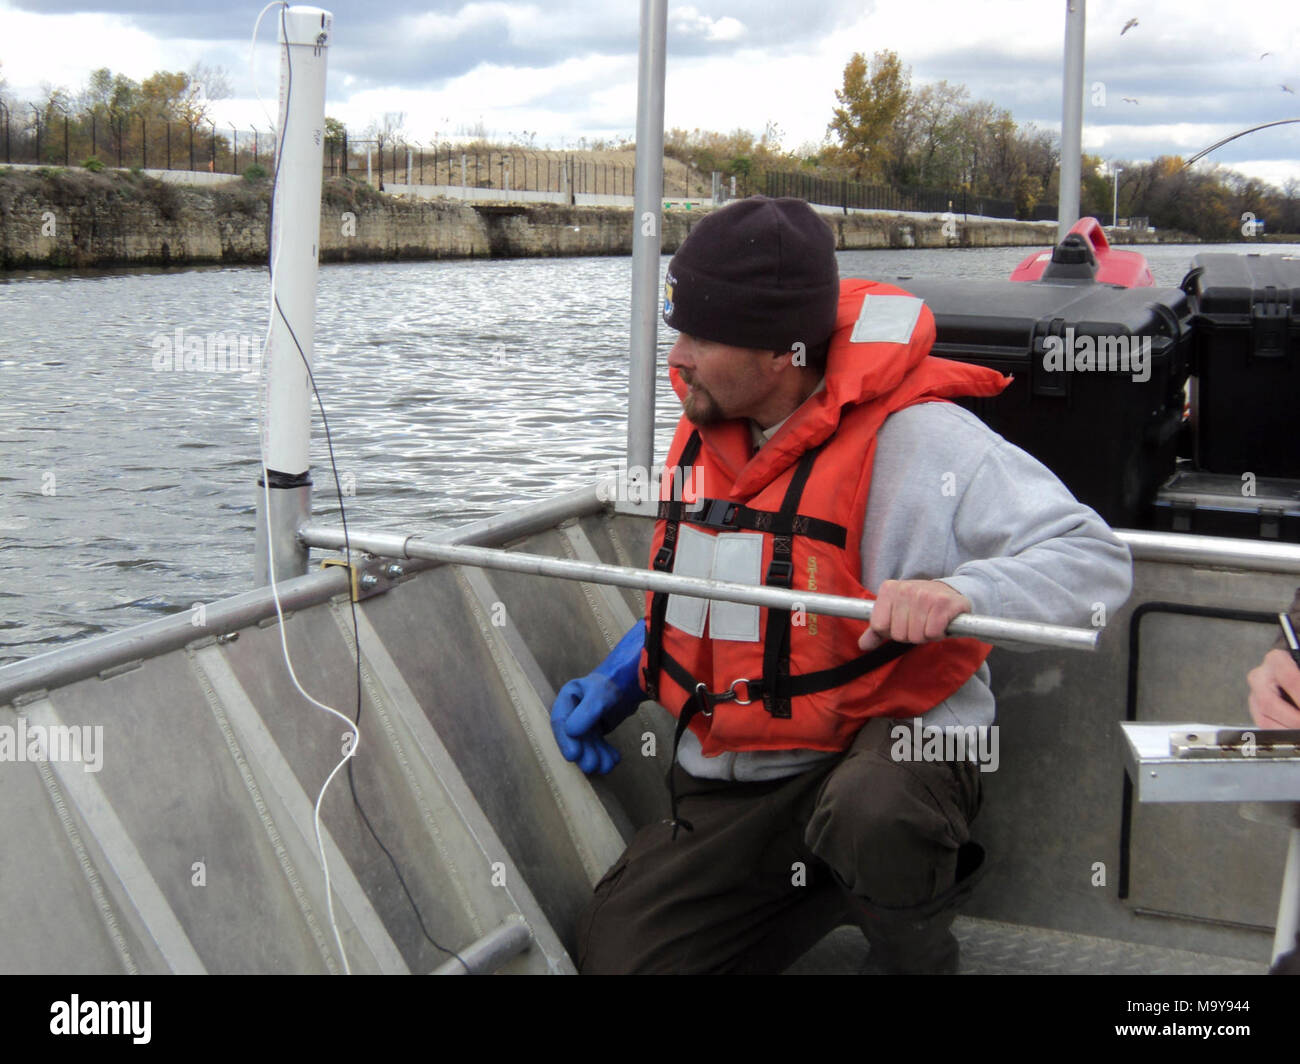 Lichtschranke testen. Jeff Stewart (CARTERVILLE FWCO) Richtet ein oszilloskop Sonde zur Messung des elektrischen Feldes in verschiedenen Abständen vom Boot aus. Foto Stockfoto